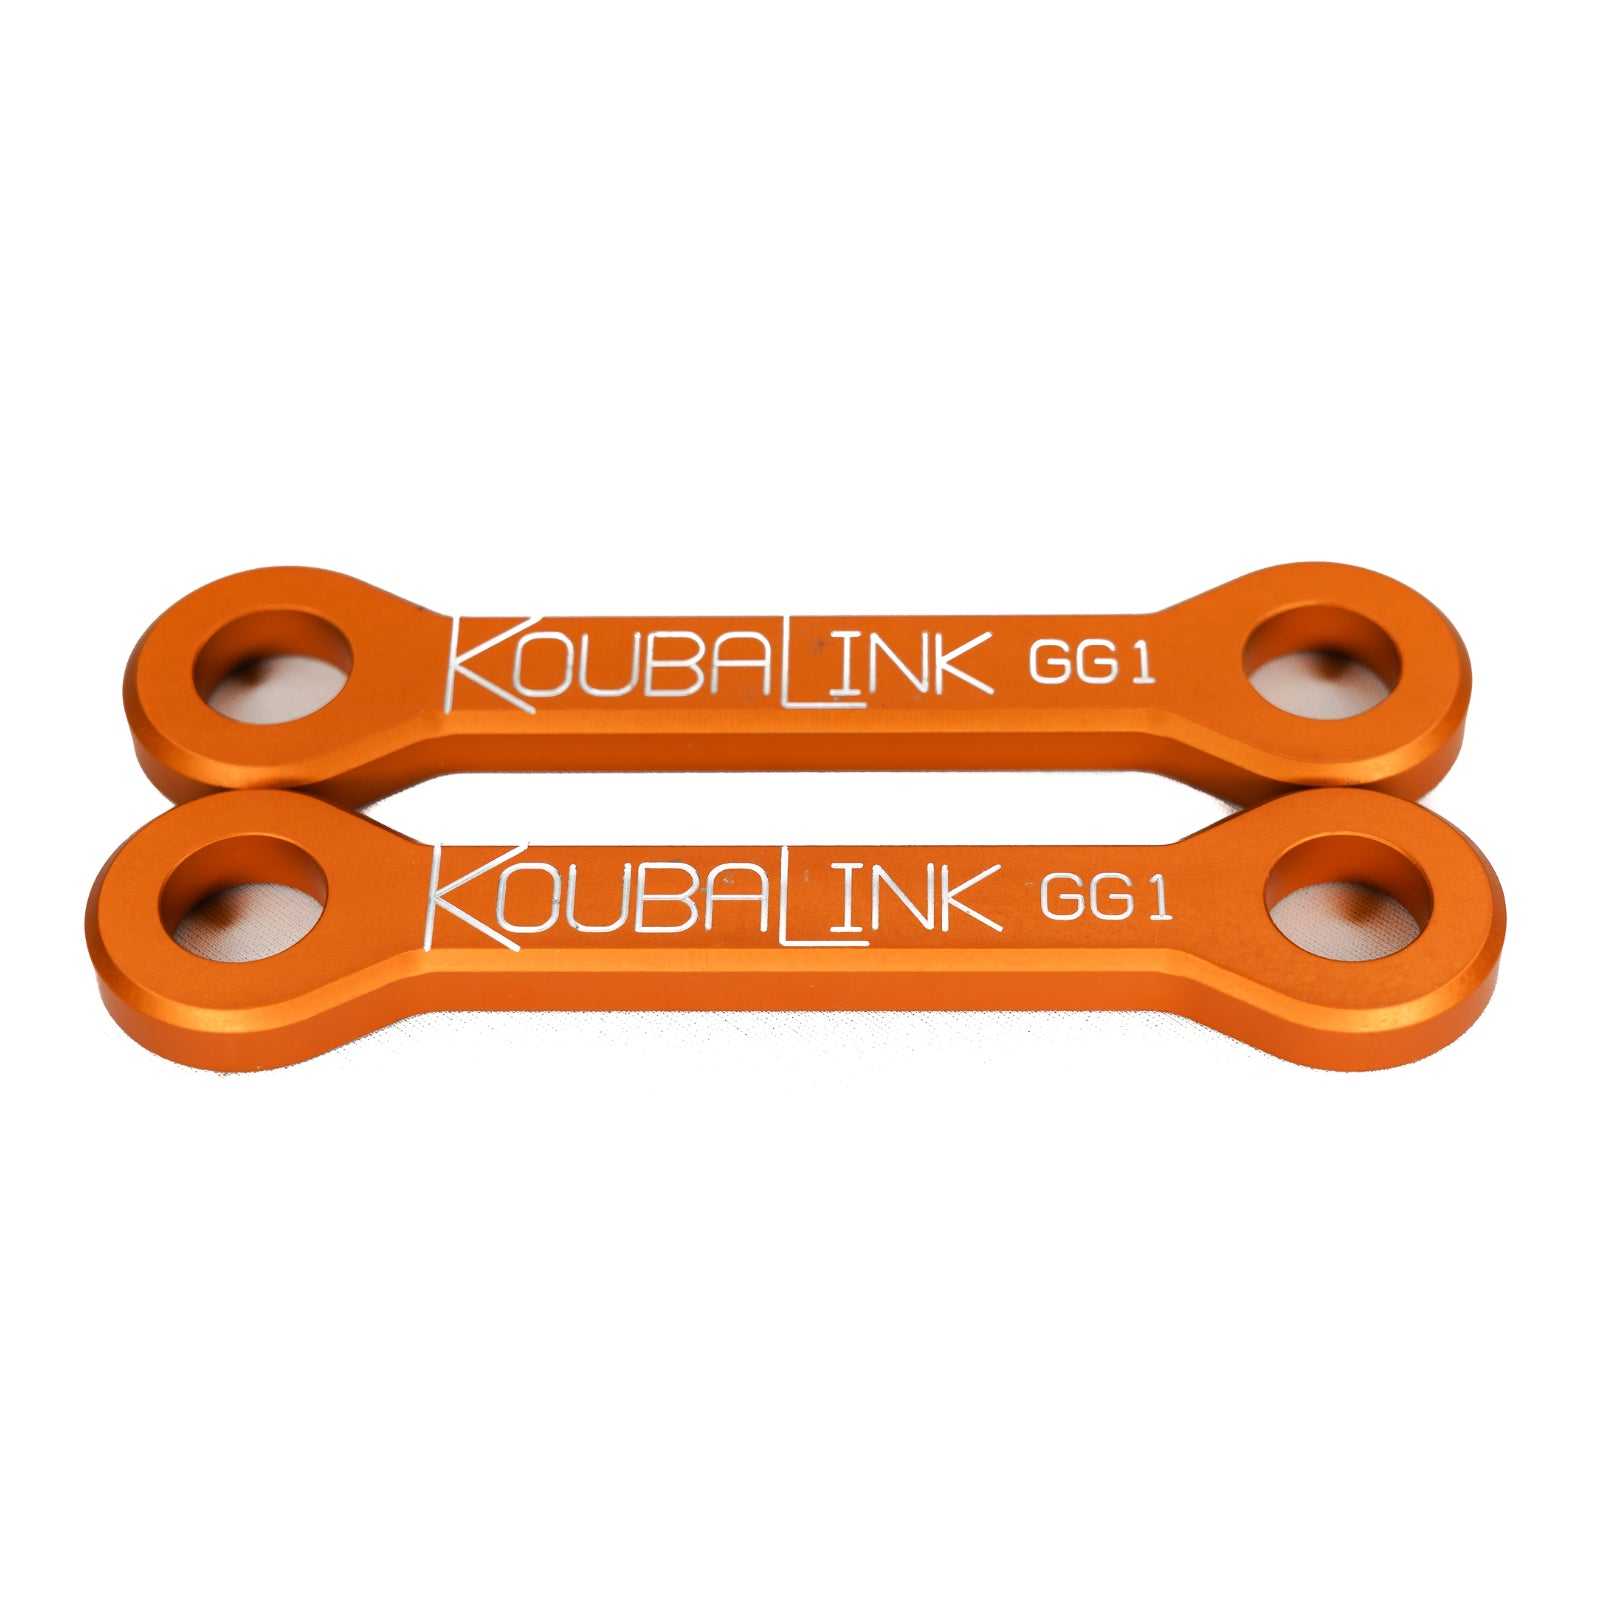 KoubaLink, Koubalink 38mm Tieferlegungsgestänge GG13-2 – Orange